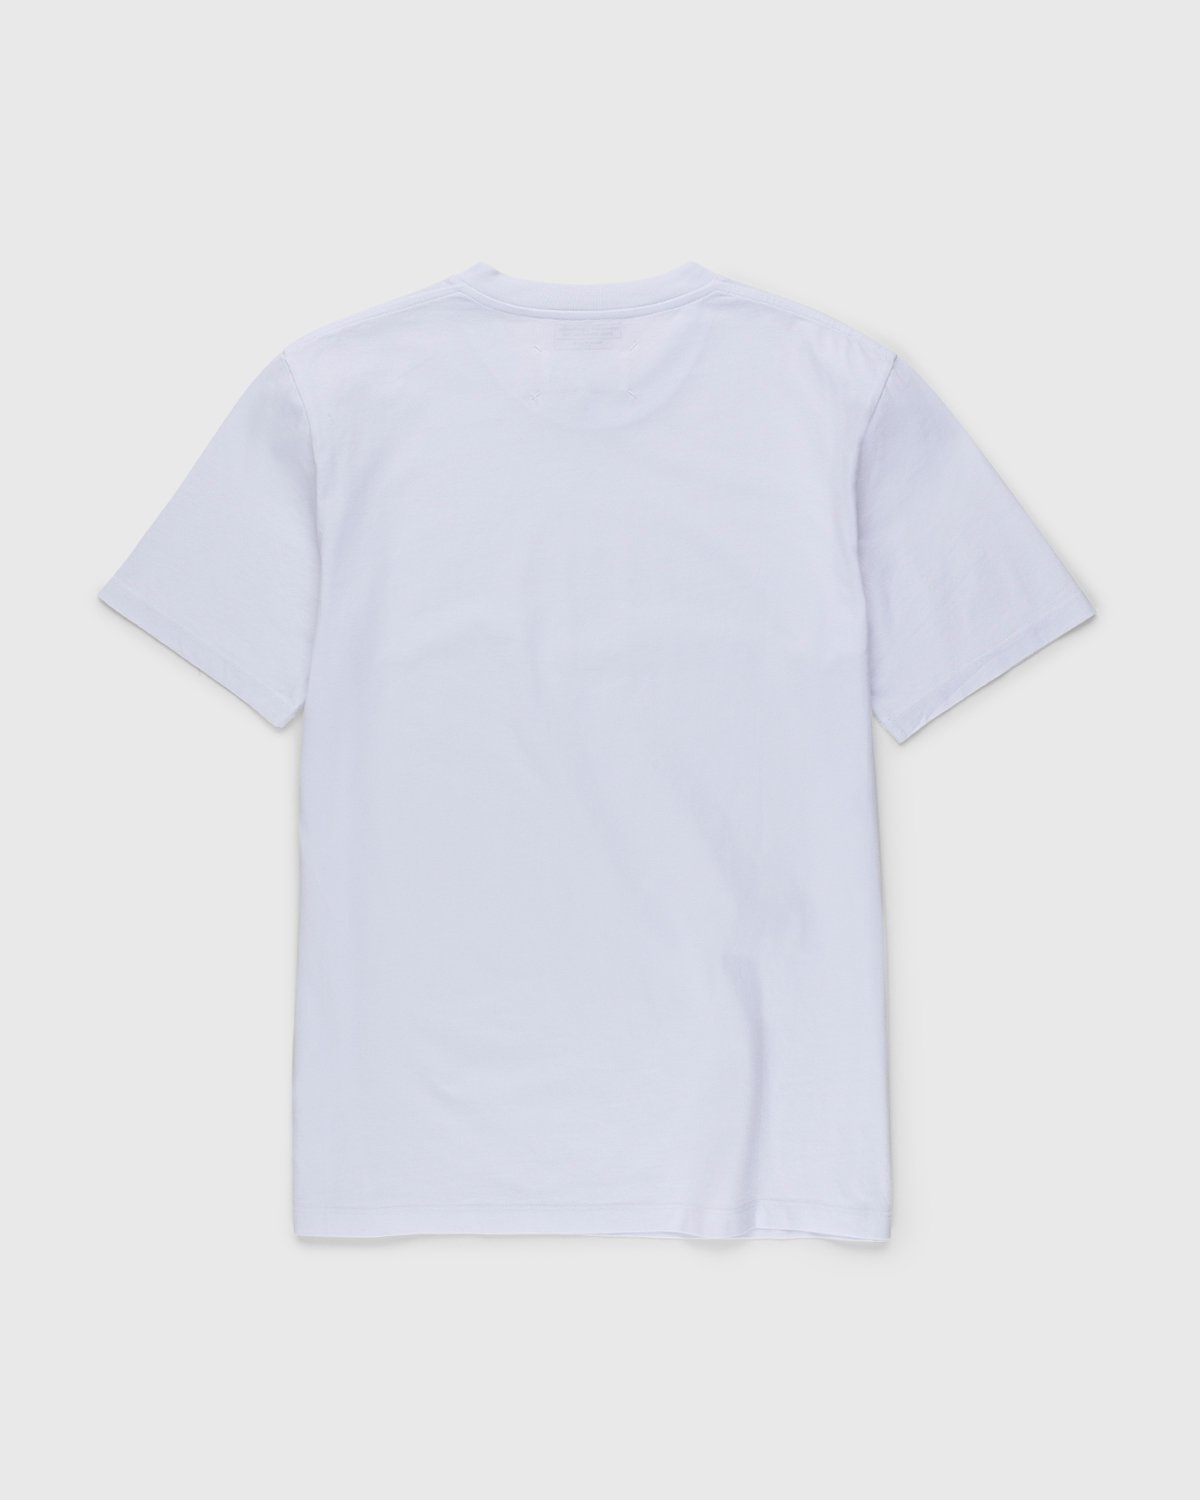 Maison Margiela – Shades of White T-Shirts 3 Pack Multi - Tops - White - Image 3